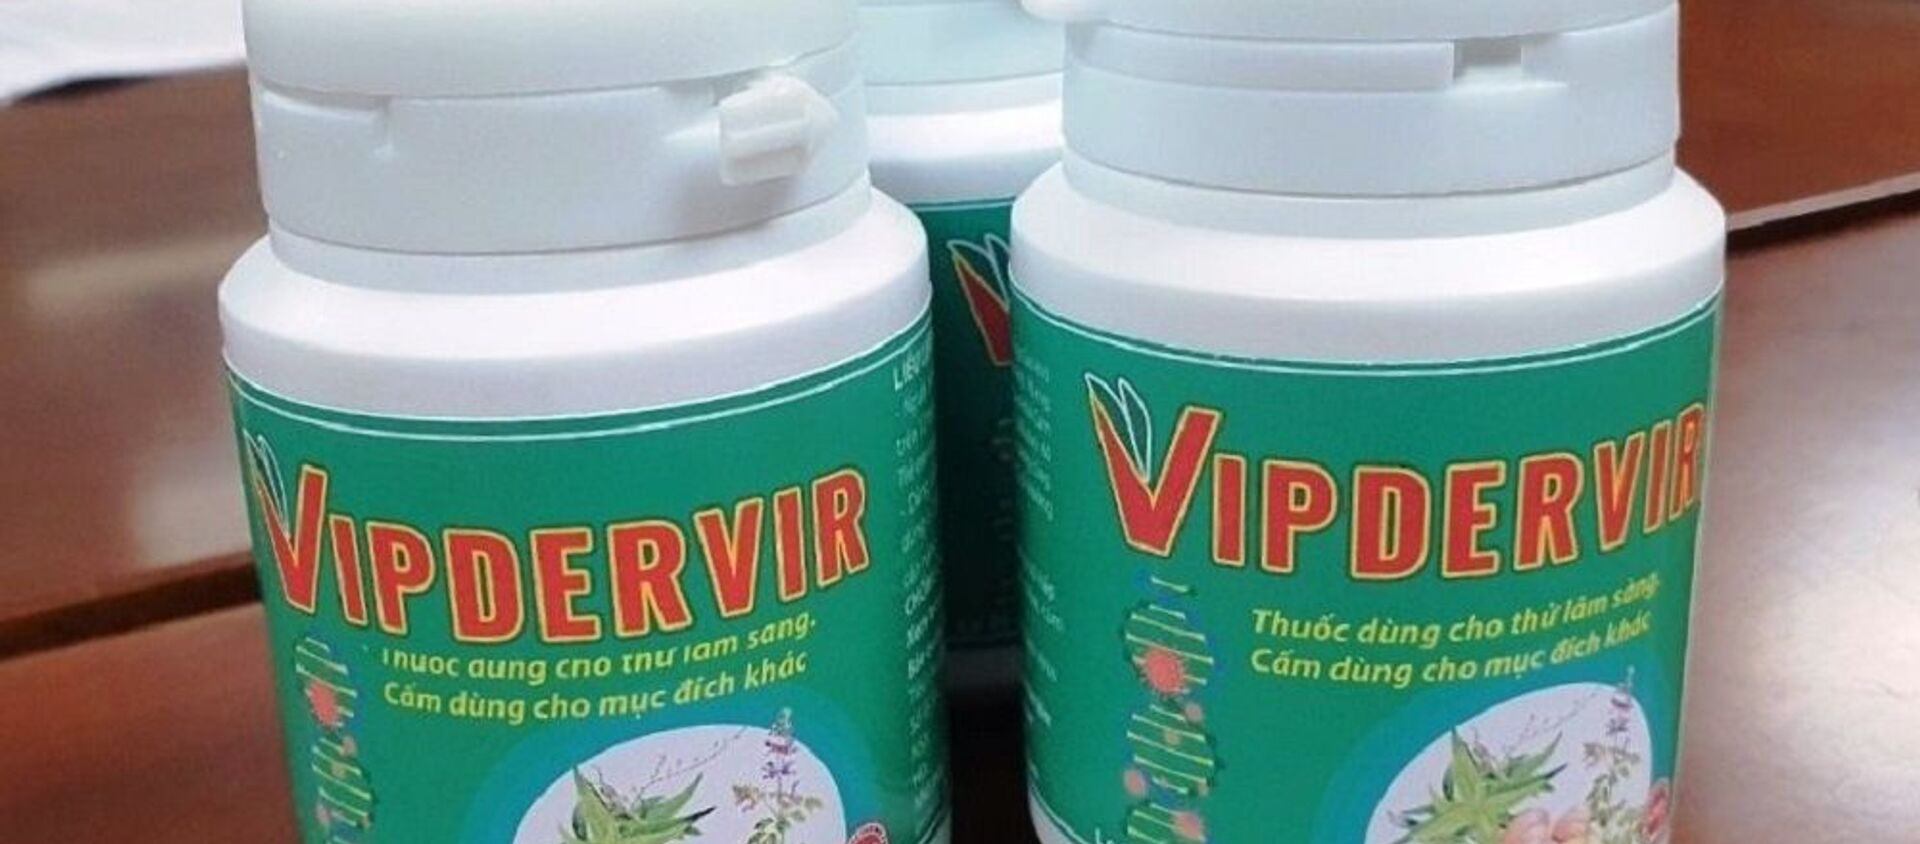 Thuốc VIPDERVIR có tác dụng ức chế sự tăng sinh của virus SARS-CoV-2. - Sputnik Việt Nam, 1920, 10.08.2021